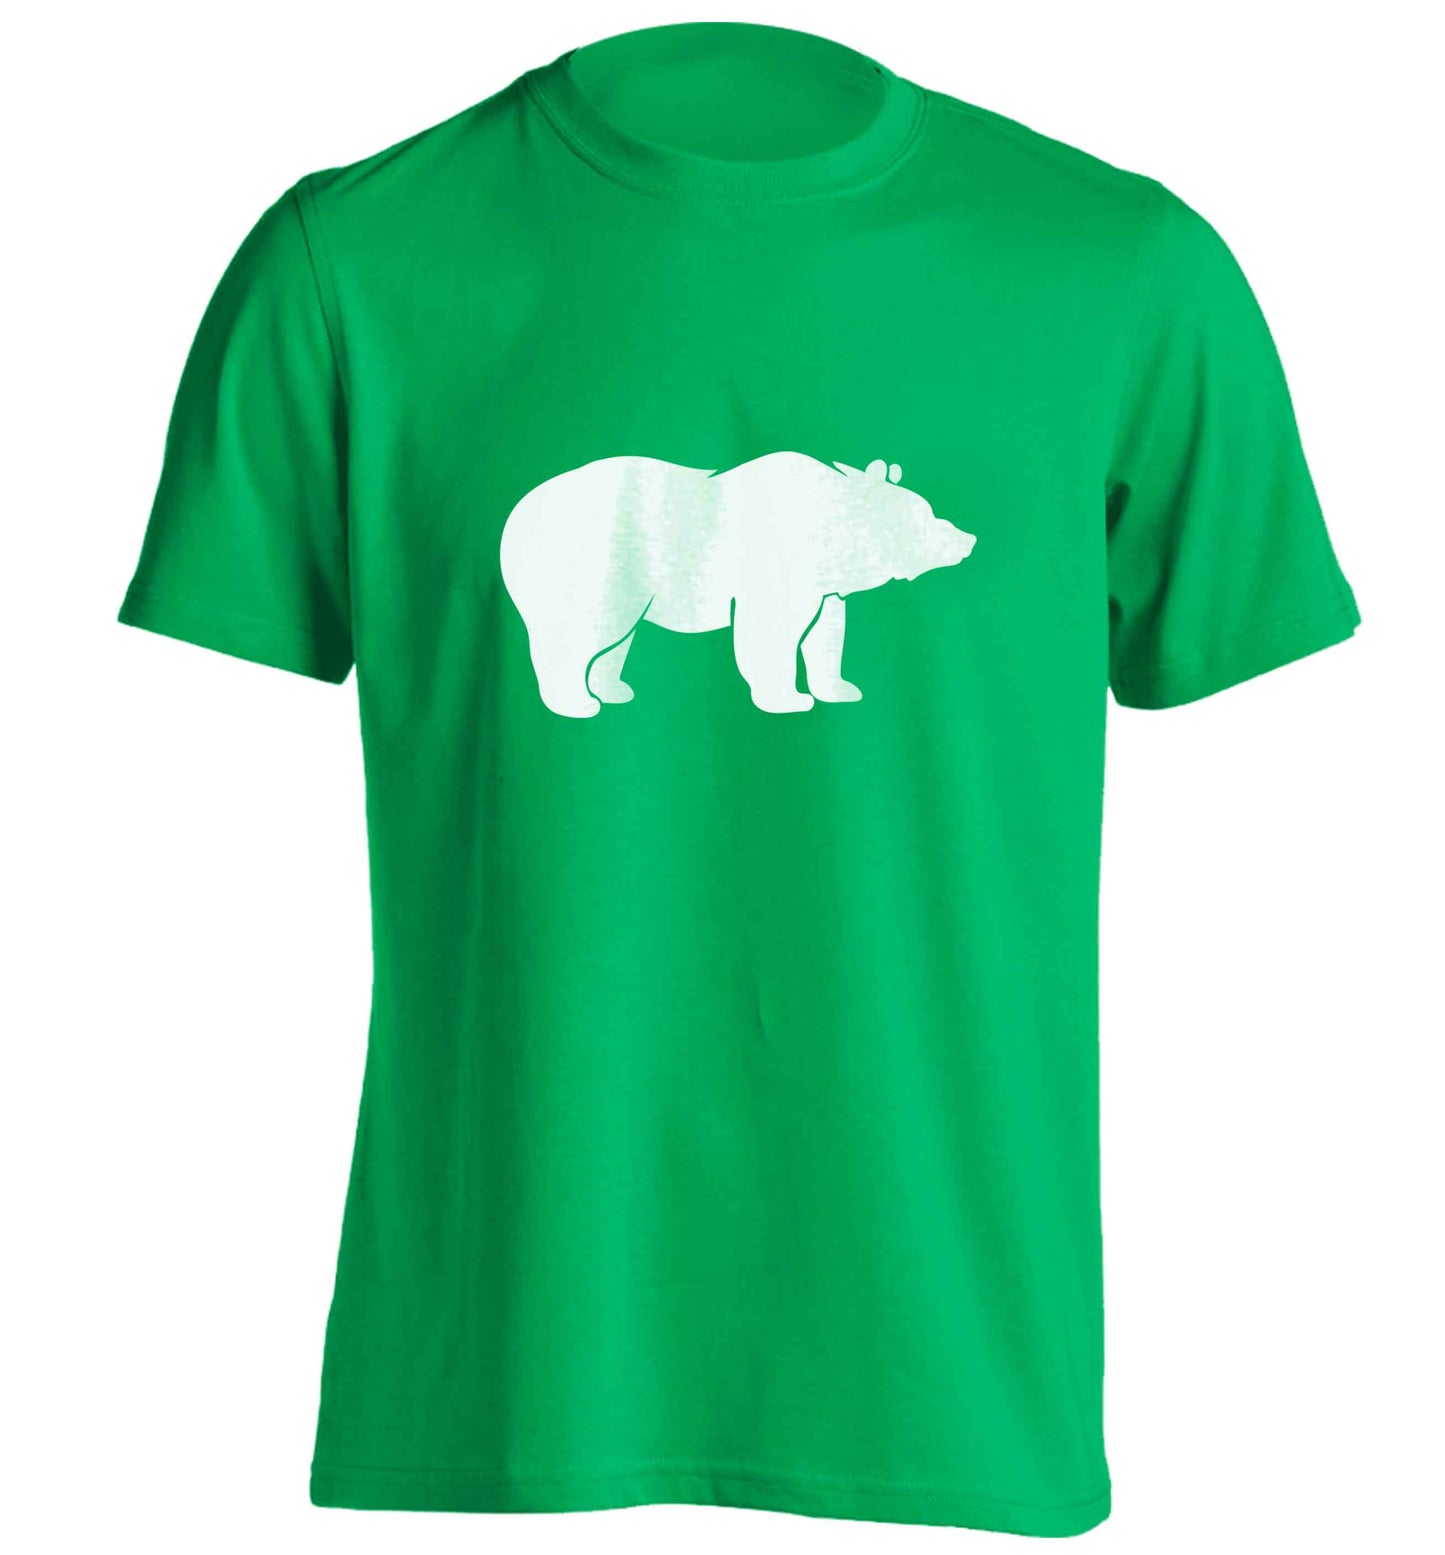 Blue bear adults unisex green Tshirt 2XL